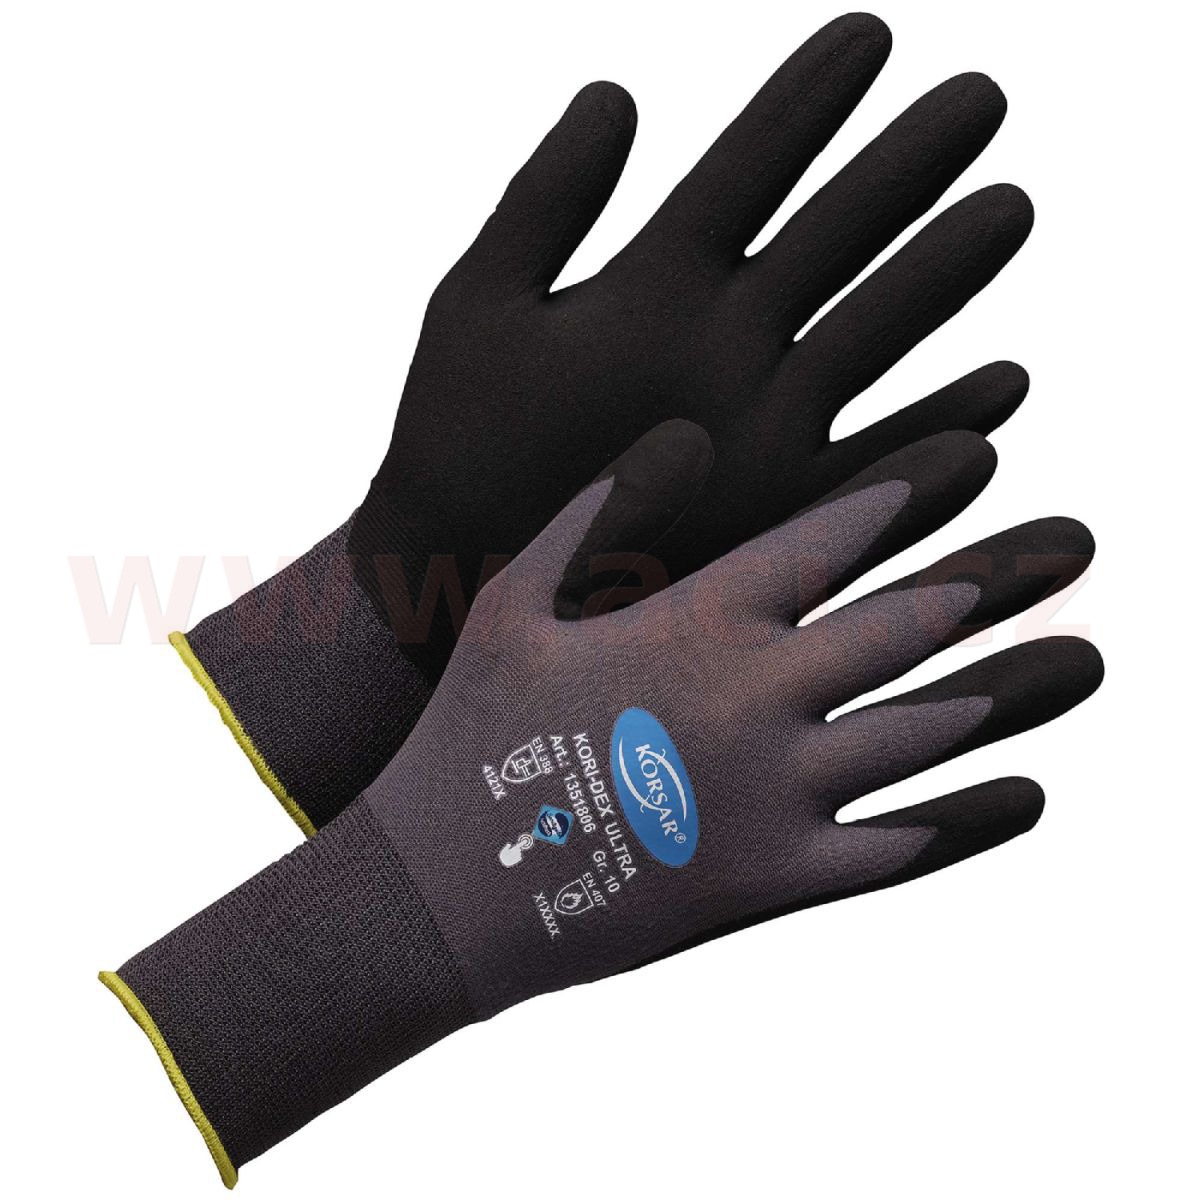 Obrázek produktu Pracovní rukavice Korsar Kori-Dex Ultra šedo-černá nylon (sada 12 párů) 1351806